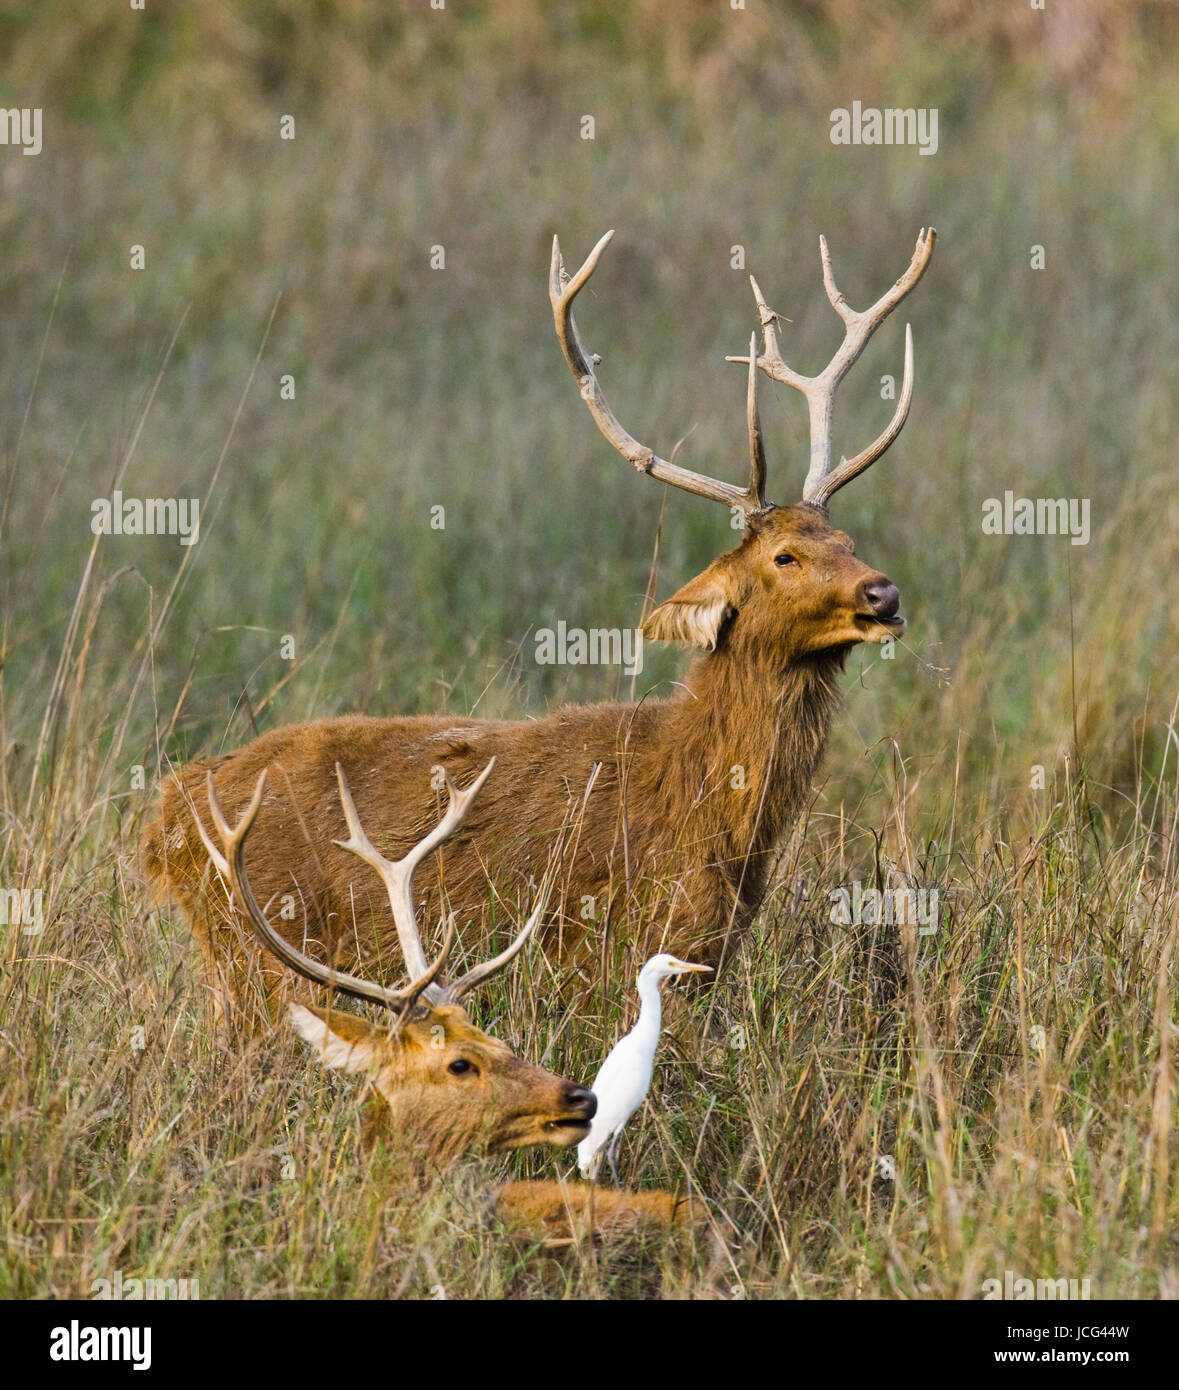 Zwei Hirsche mit schönen Hörnern stehen in der Wildnis im Gras. Indien. Nationalpark. Stockfoto